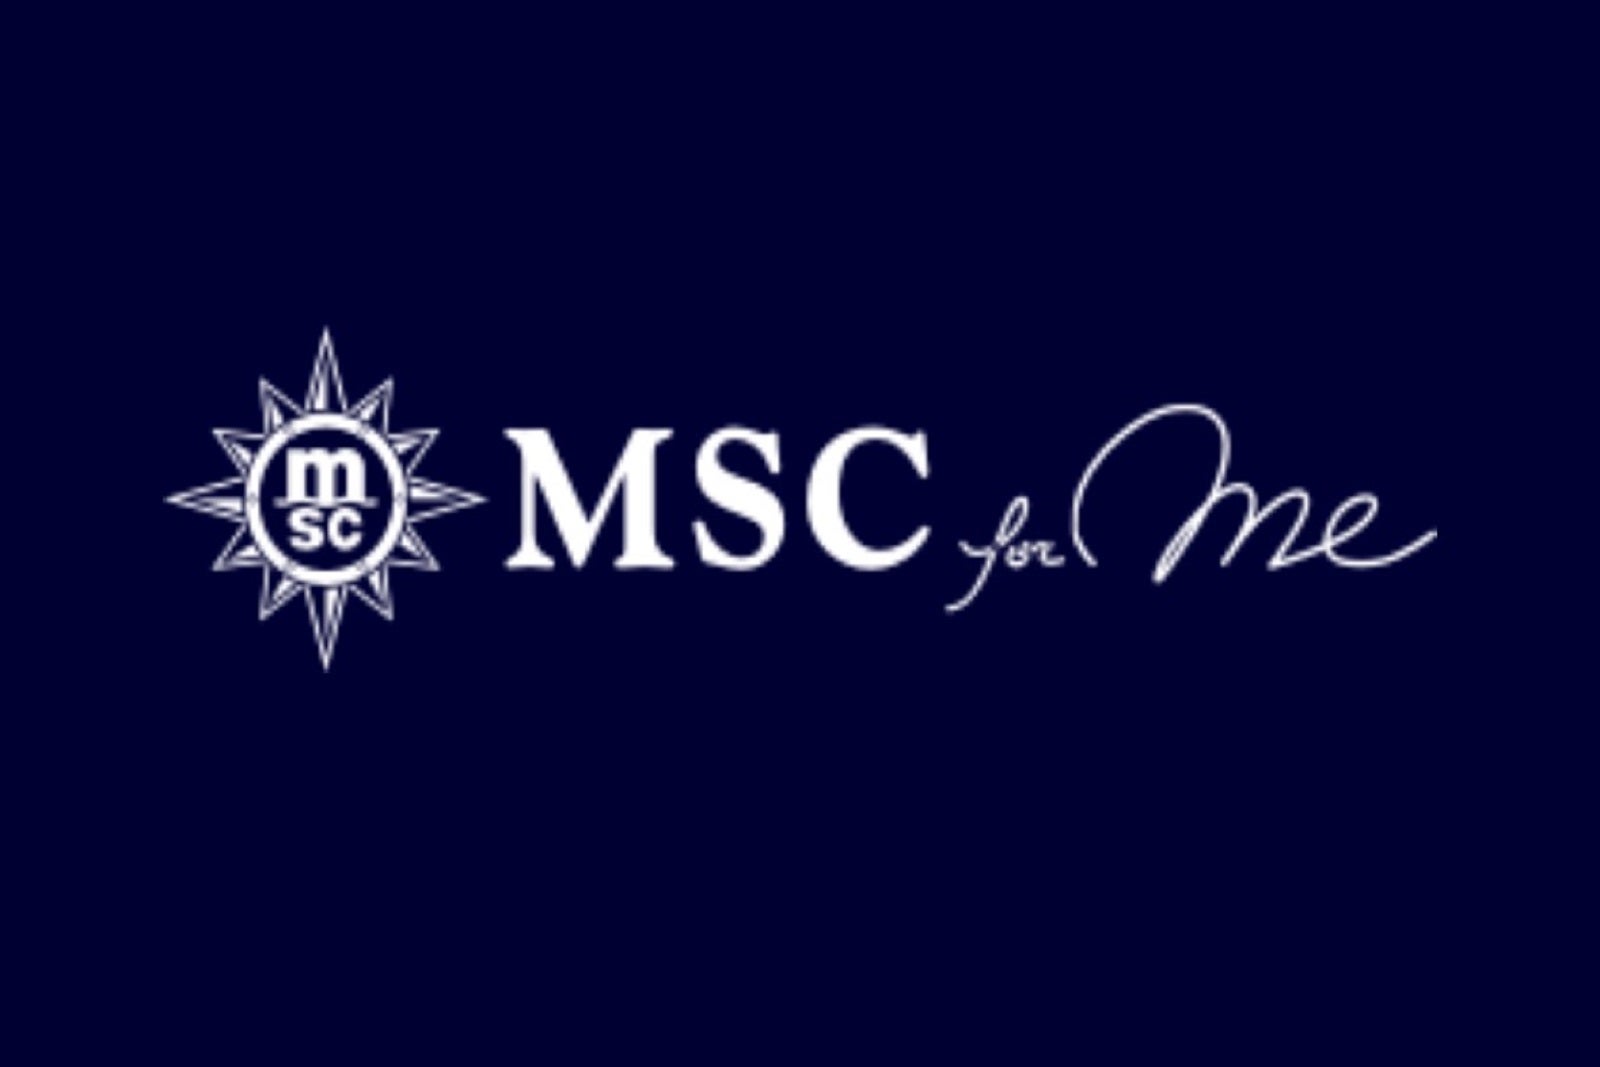 msc yacht club fee